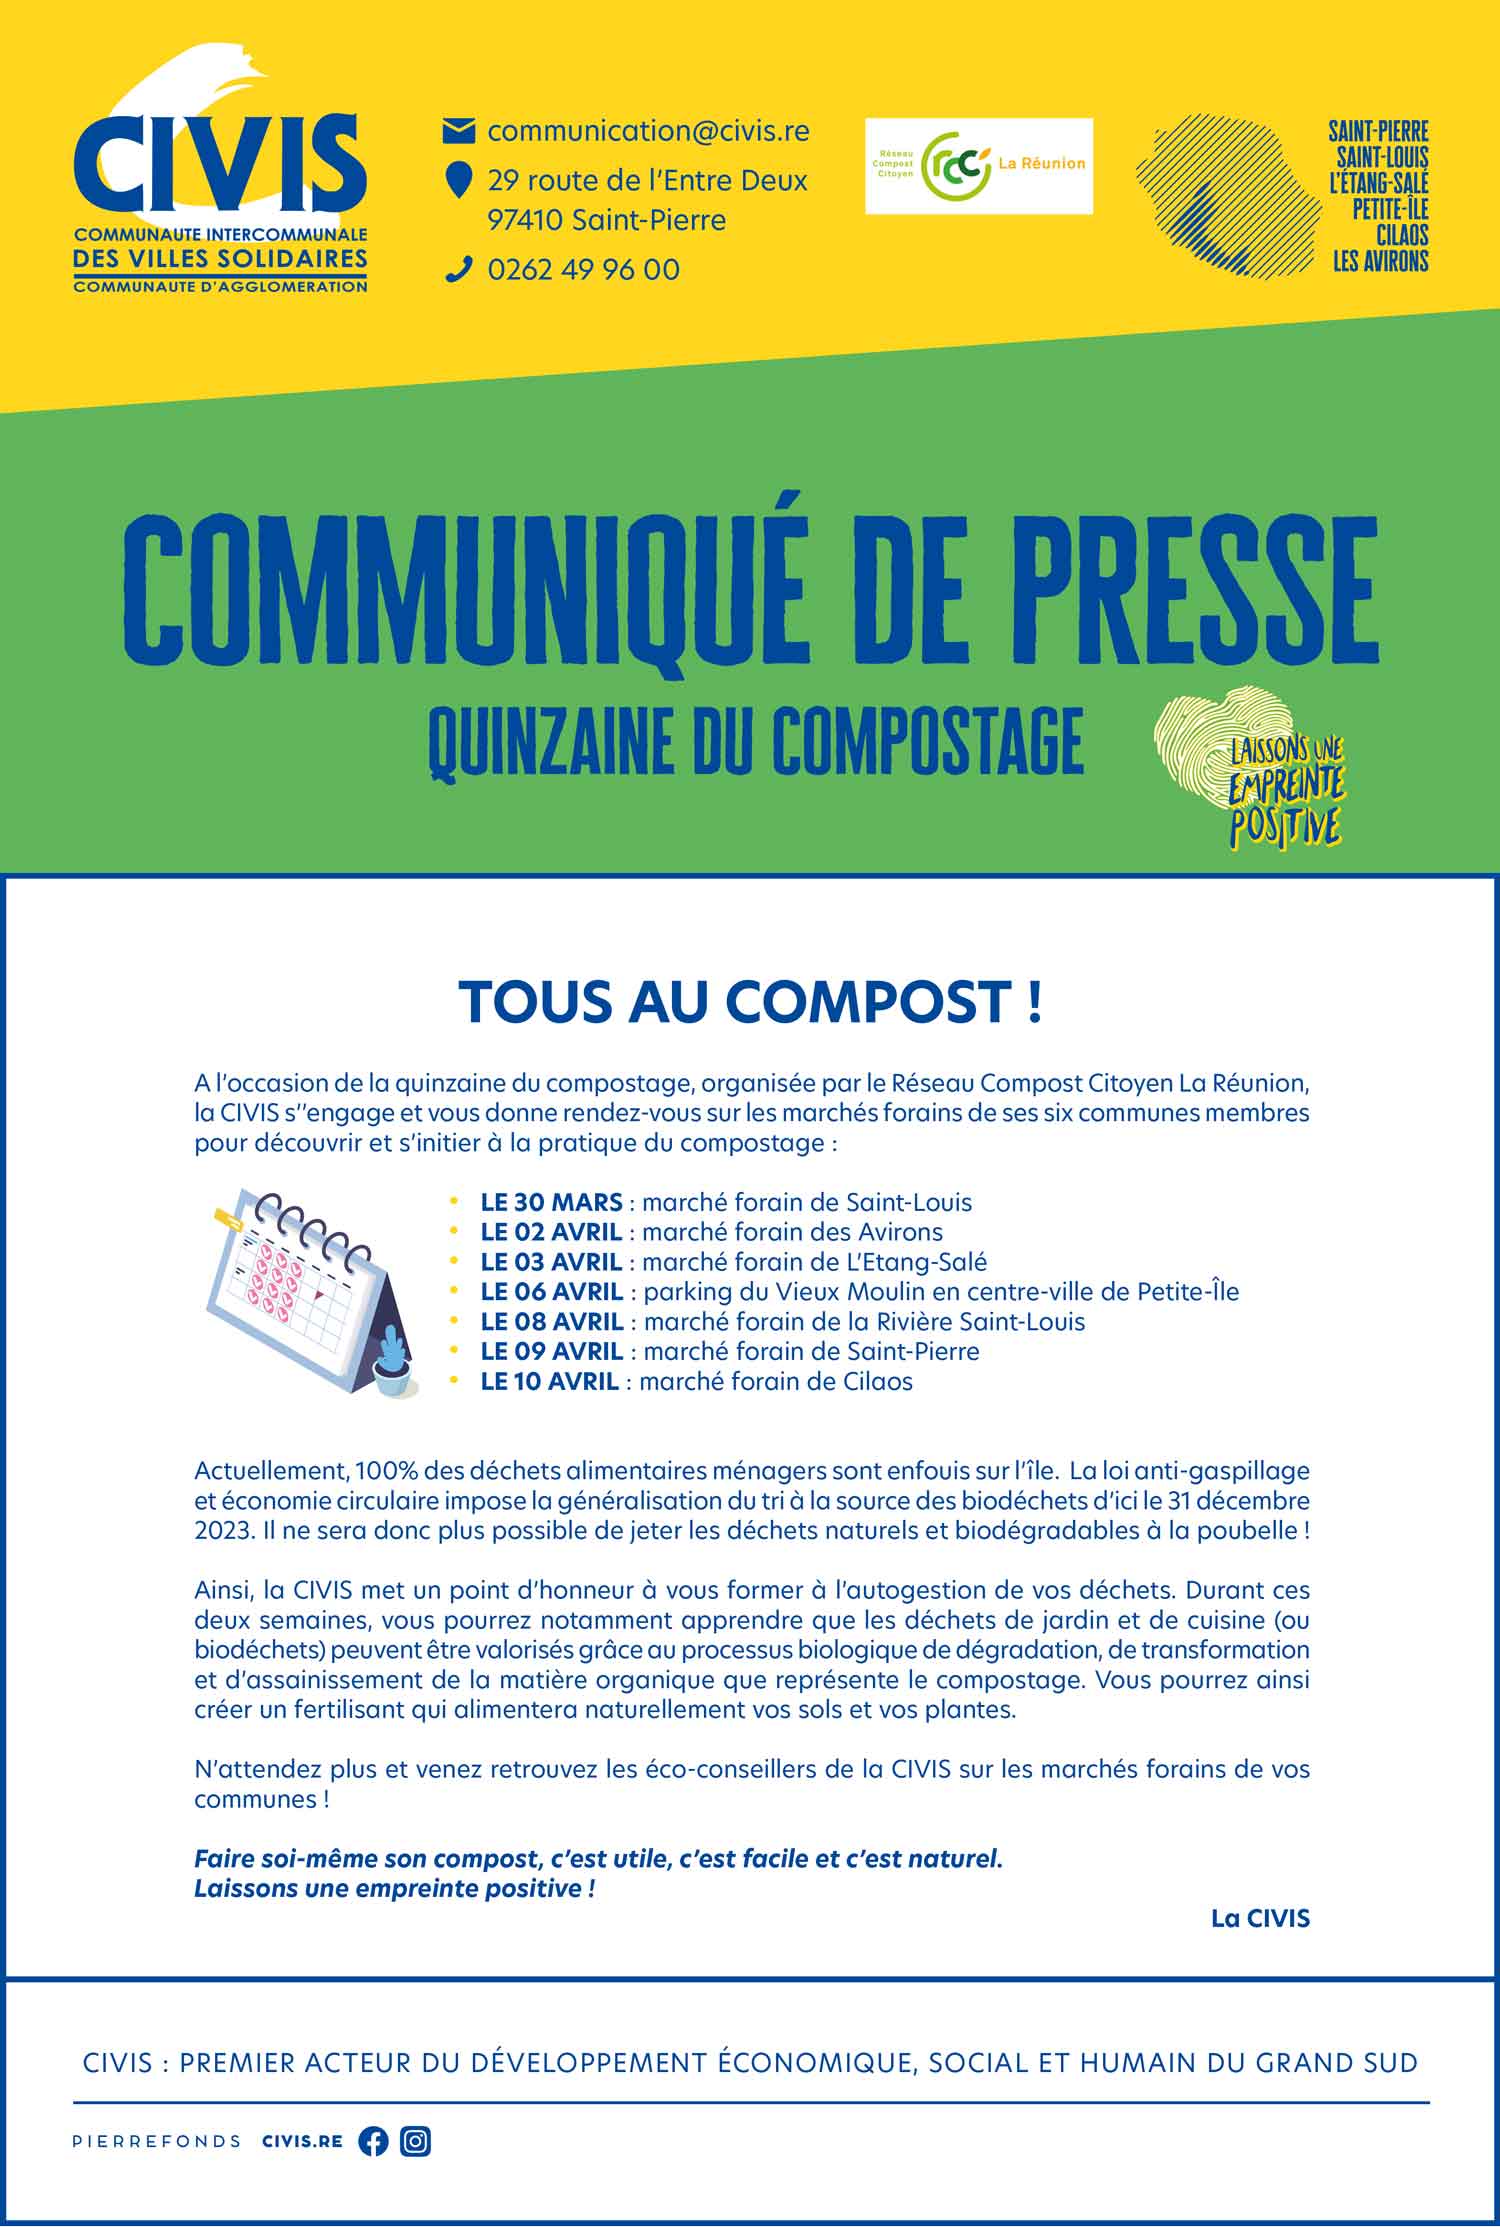 Communiqué de presse - quinzaine du compostage